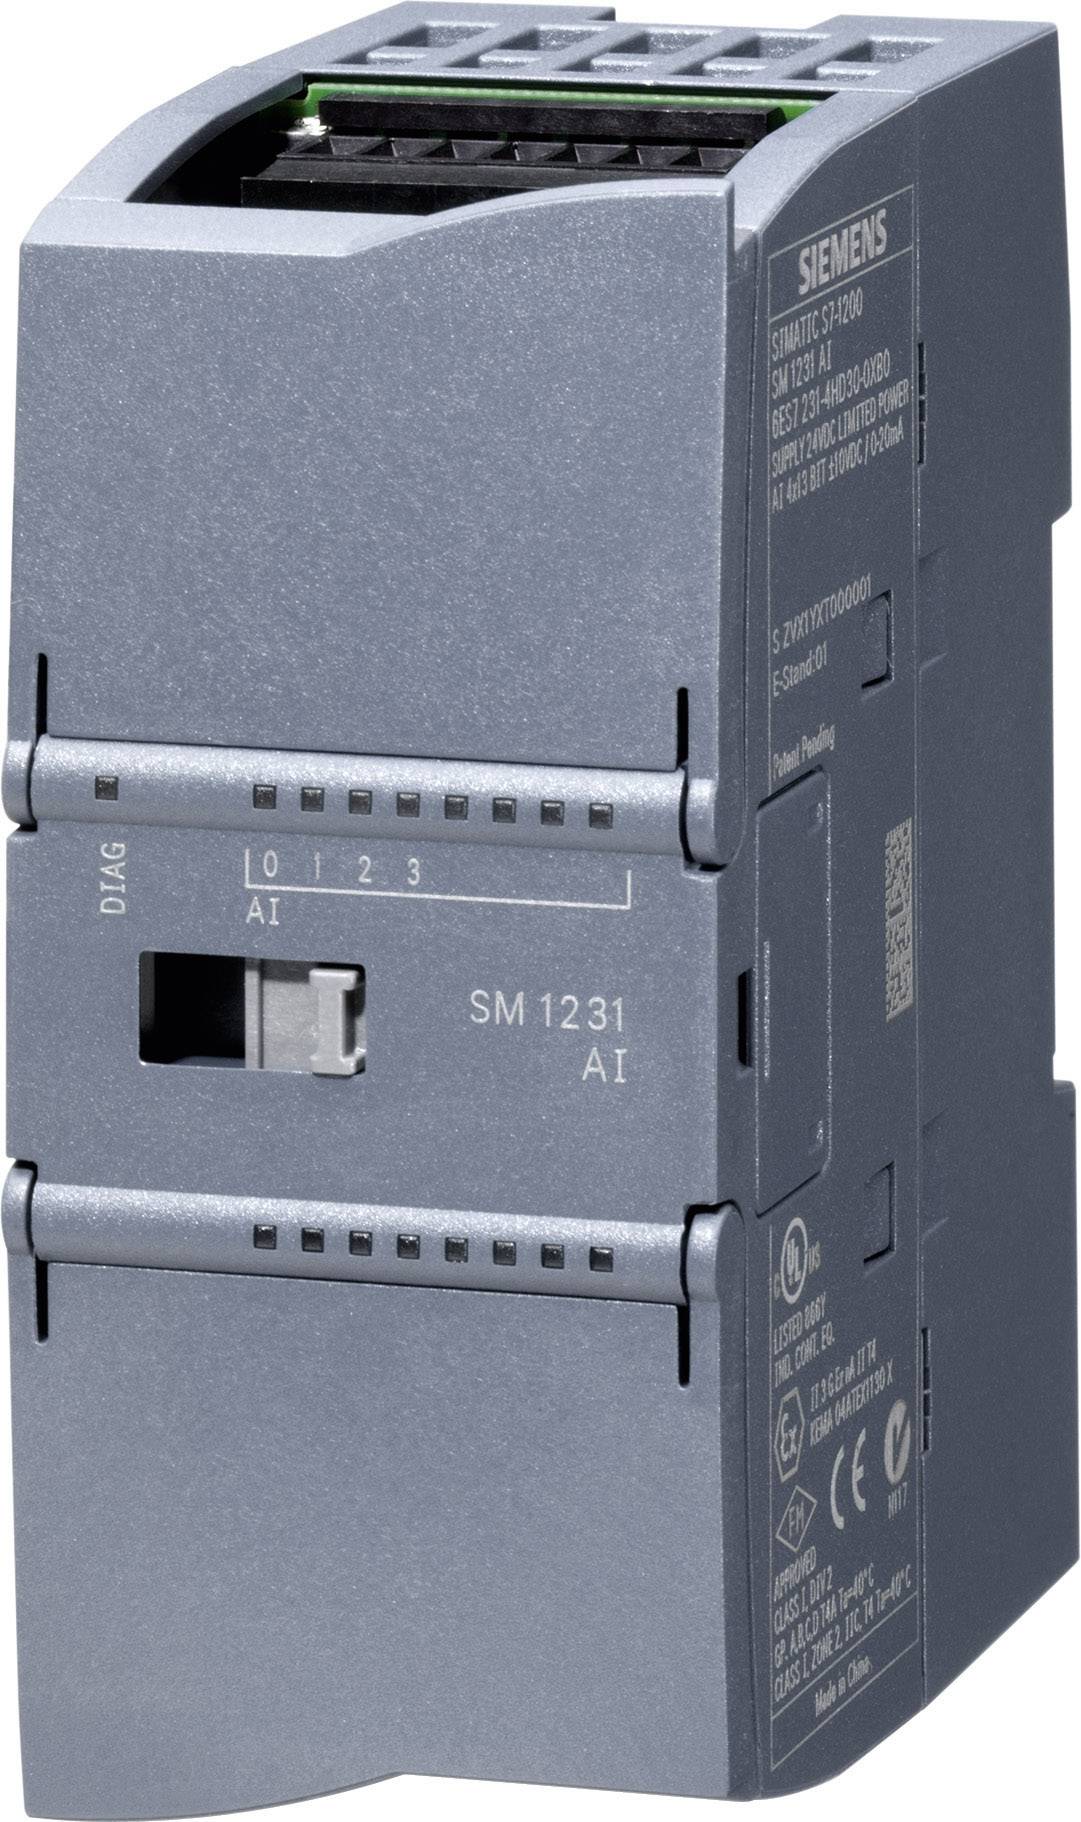 Siemens SM 1231 6ES7231-5QF32-0XB0 PLC add-on module